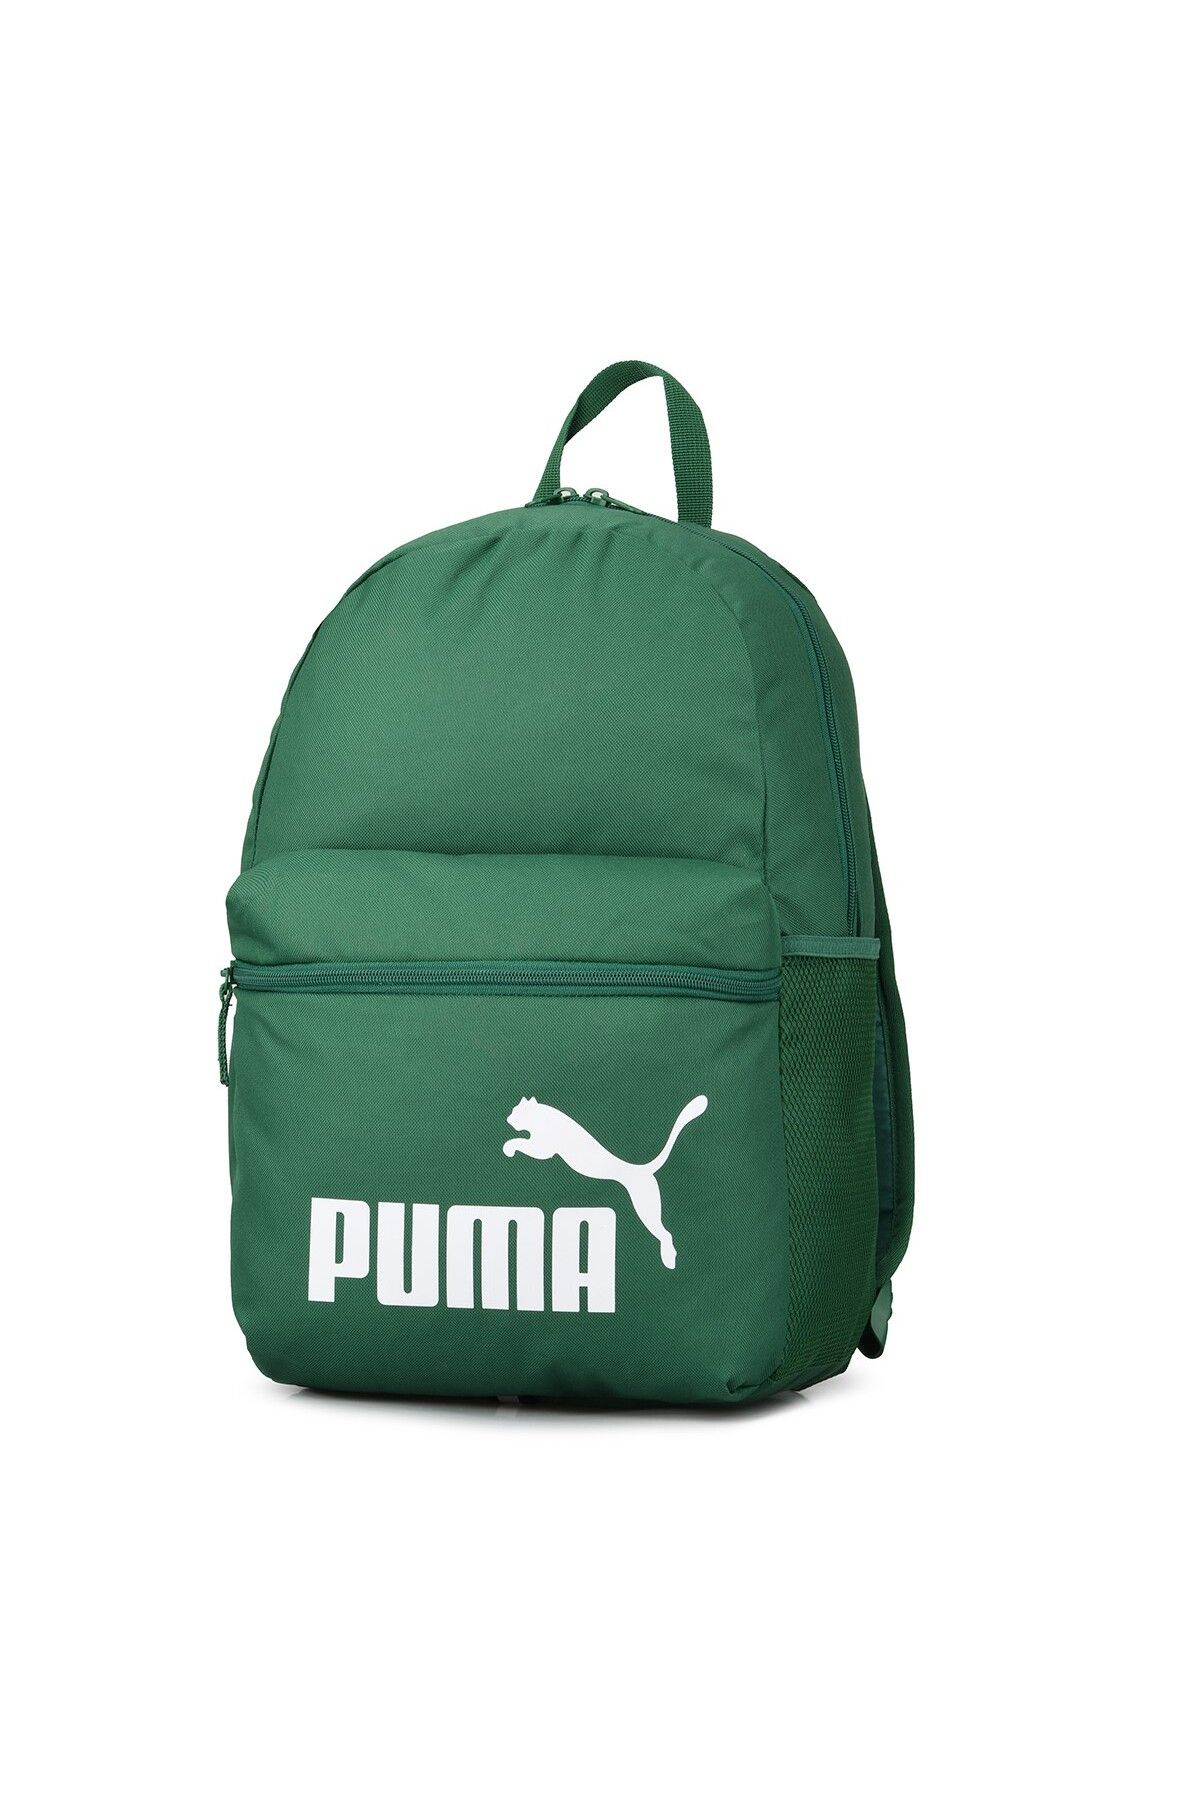 Puma Phase Sırt Çantası Backpack 75487